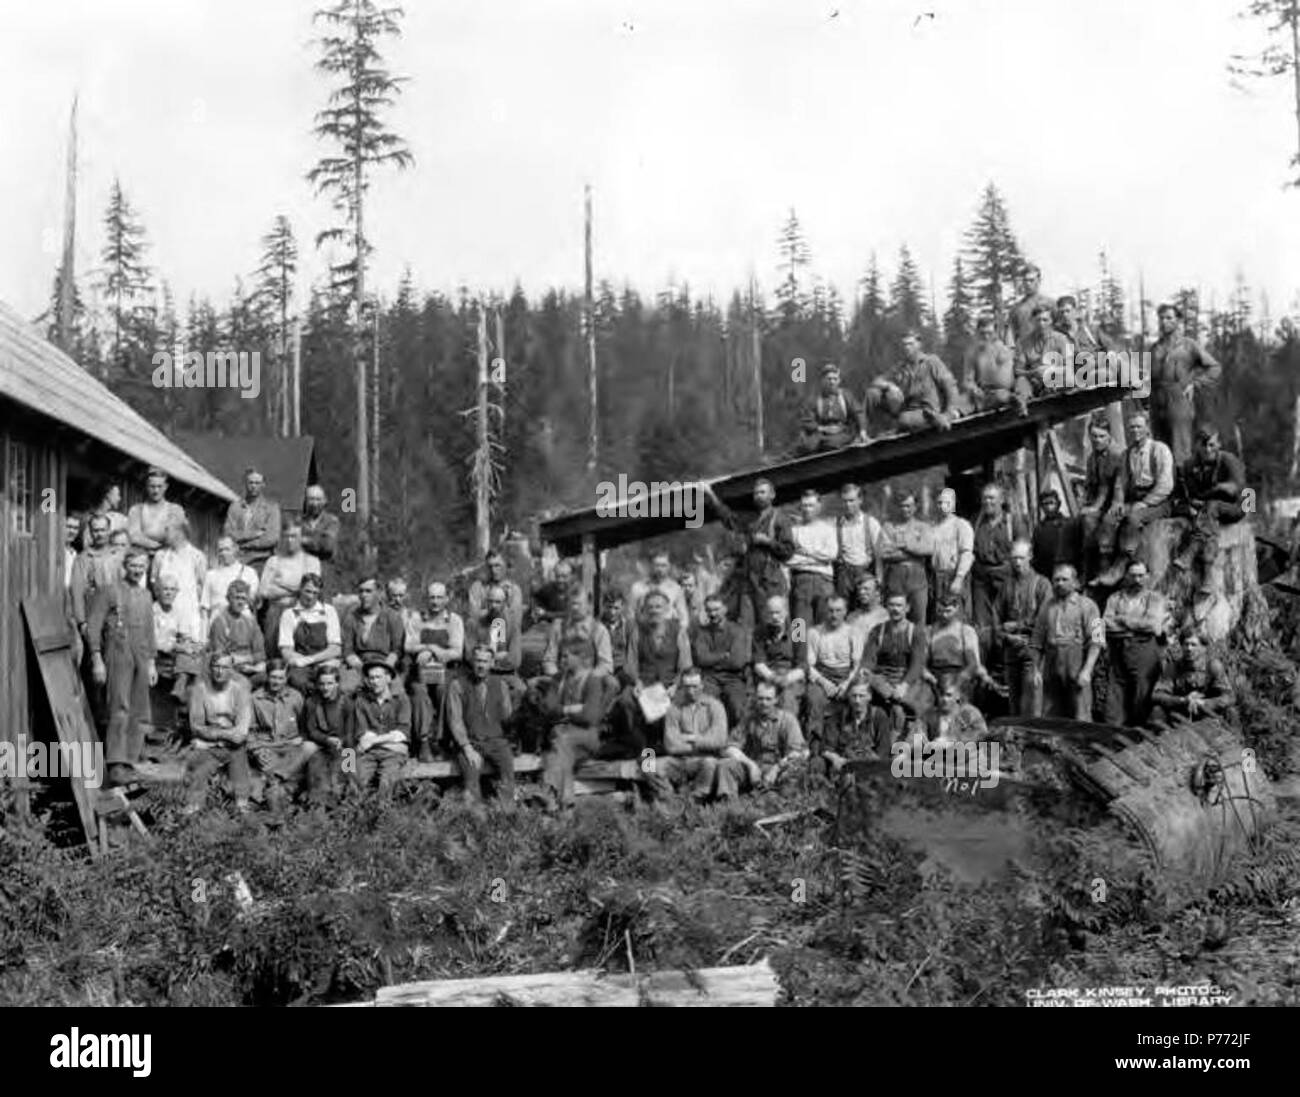 Anglais : Légende sur l'image : No 1 PH Coll 516,4470 le Twin Falls compagnie forestière était une filiale de la Weyerhaeuser Timber Company créée en réponse à la 1902 Yacolt brûler dans le sud-ouest de Washington. Weyerhaeuser propriétaire de plusieurs parcelles de bois en 1902 quand le feu a frappé. Le Twin Falls, l'entreprise a été formée afin de récupérer le bois brûlé, avec le Lac Rivière Boom Company. En 1904, l'inquiétude serait nommé le comté de Clark Timber Company, avec le Twin Falls, l'entreprise agissant comme le bras d'exploitation et le Lac Rivière Boom Company agissant comme partie responsable Banque D'Images